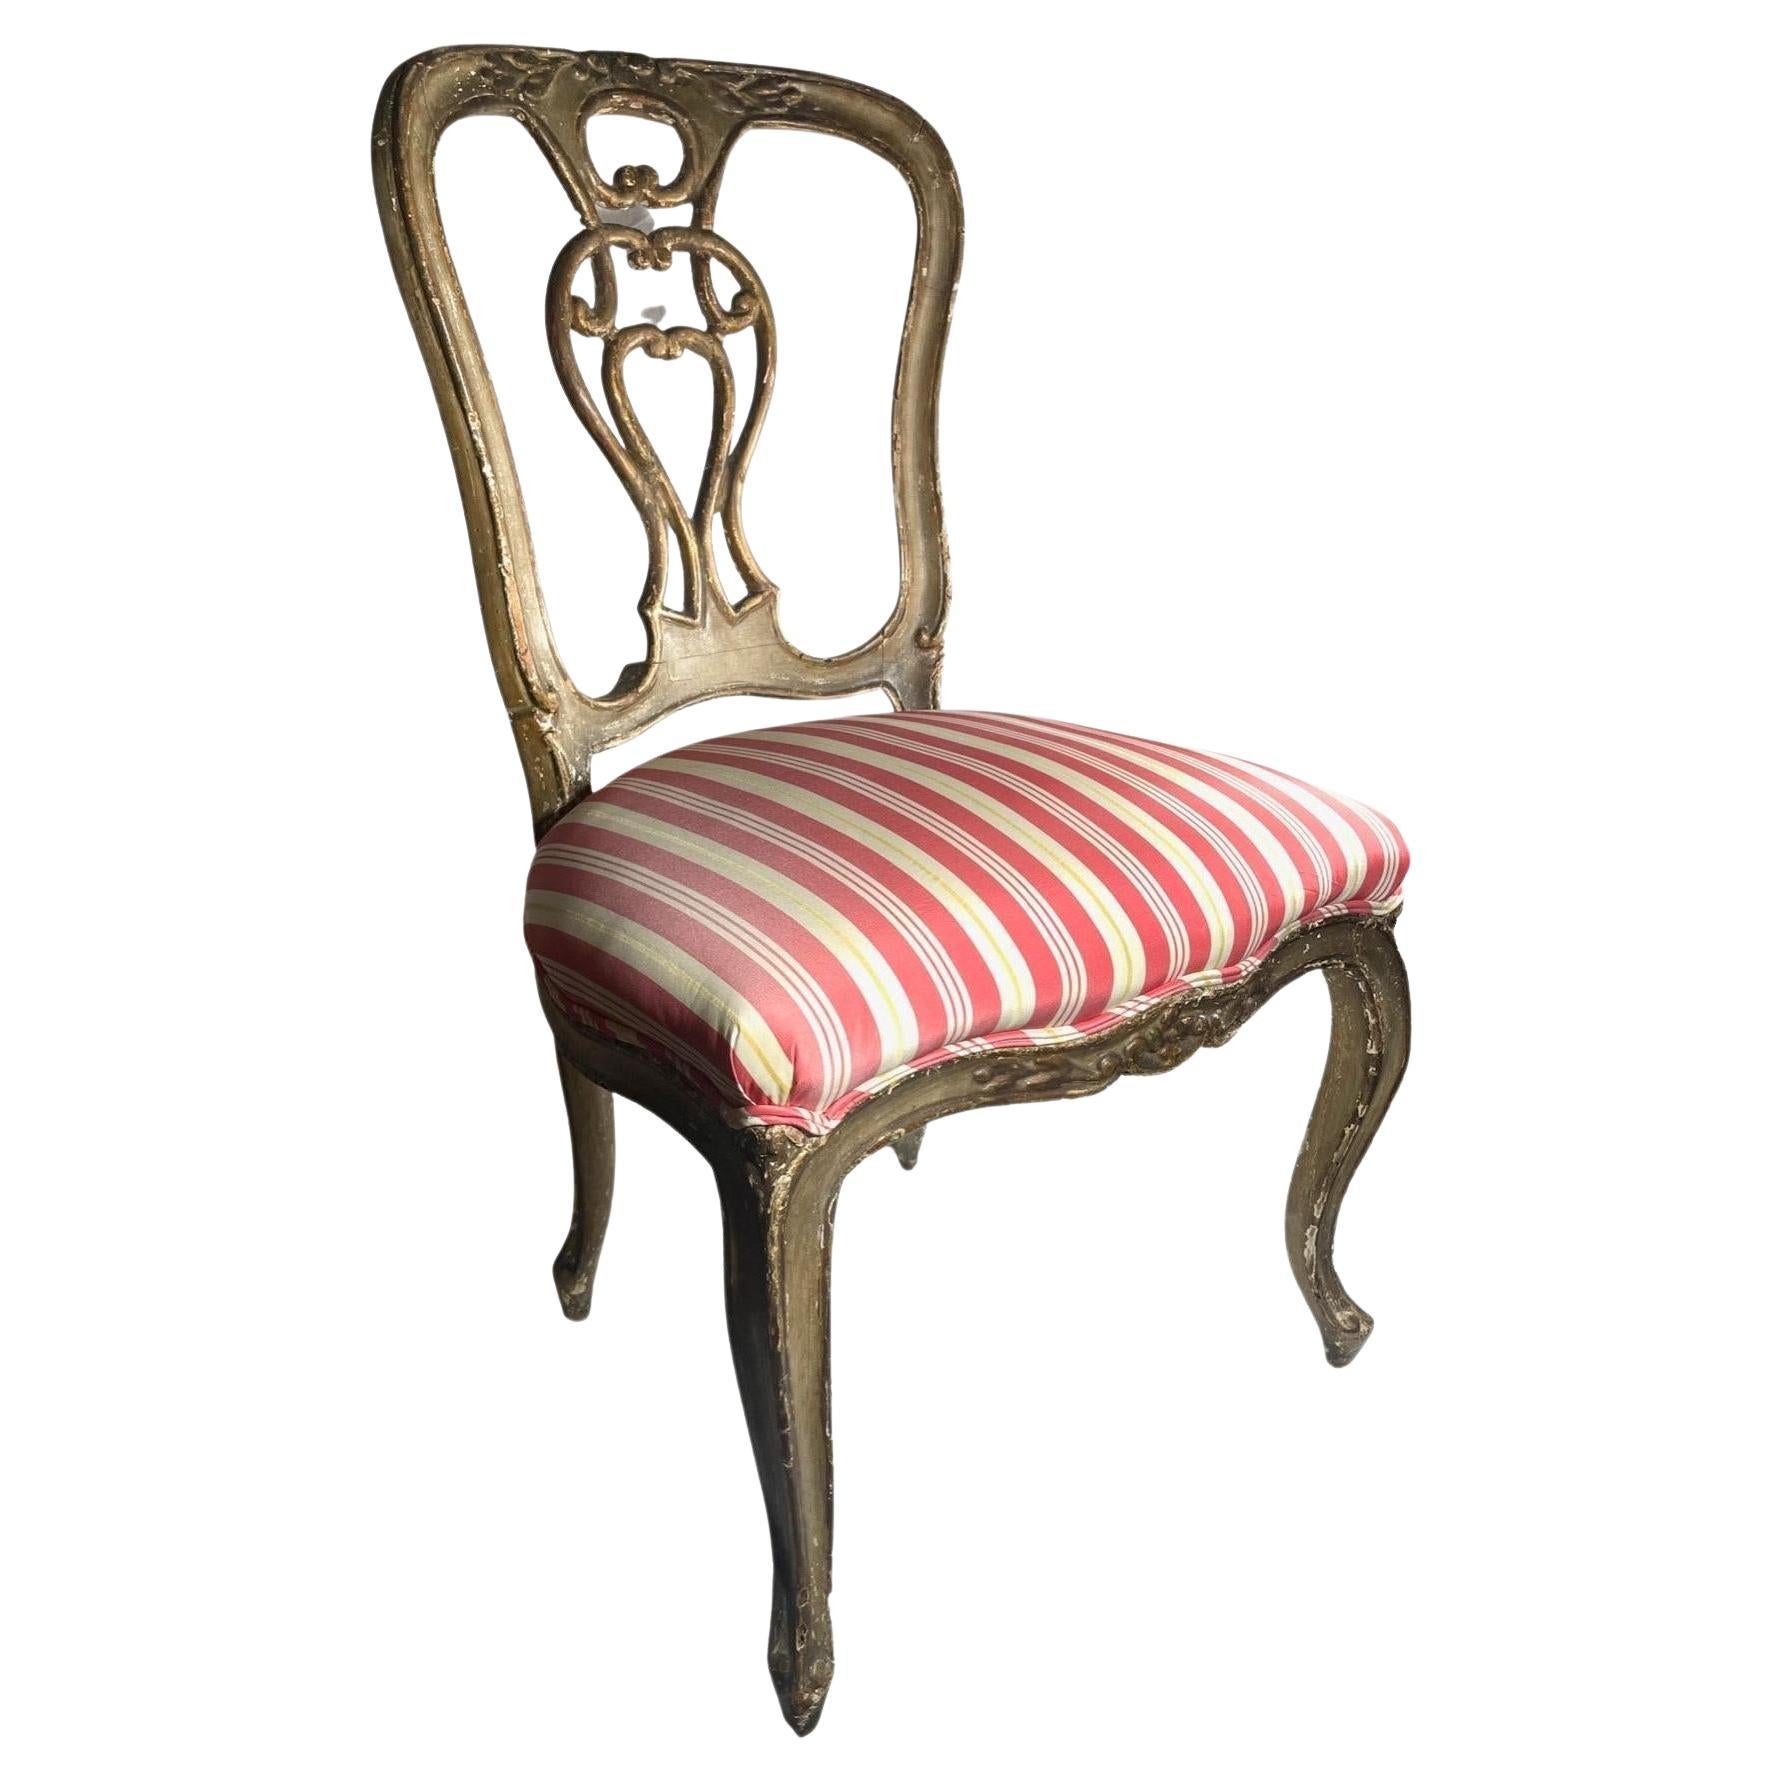 Venezianischer Rokoko-Stuhl aus dem 18. Jahrhundert mit Polychromie und Vergoldung